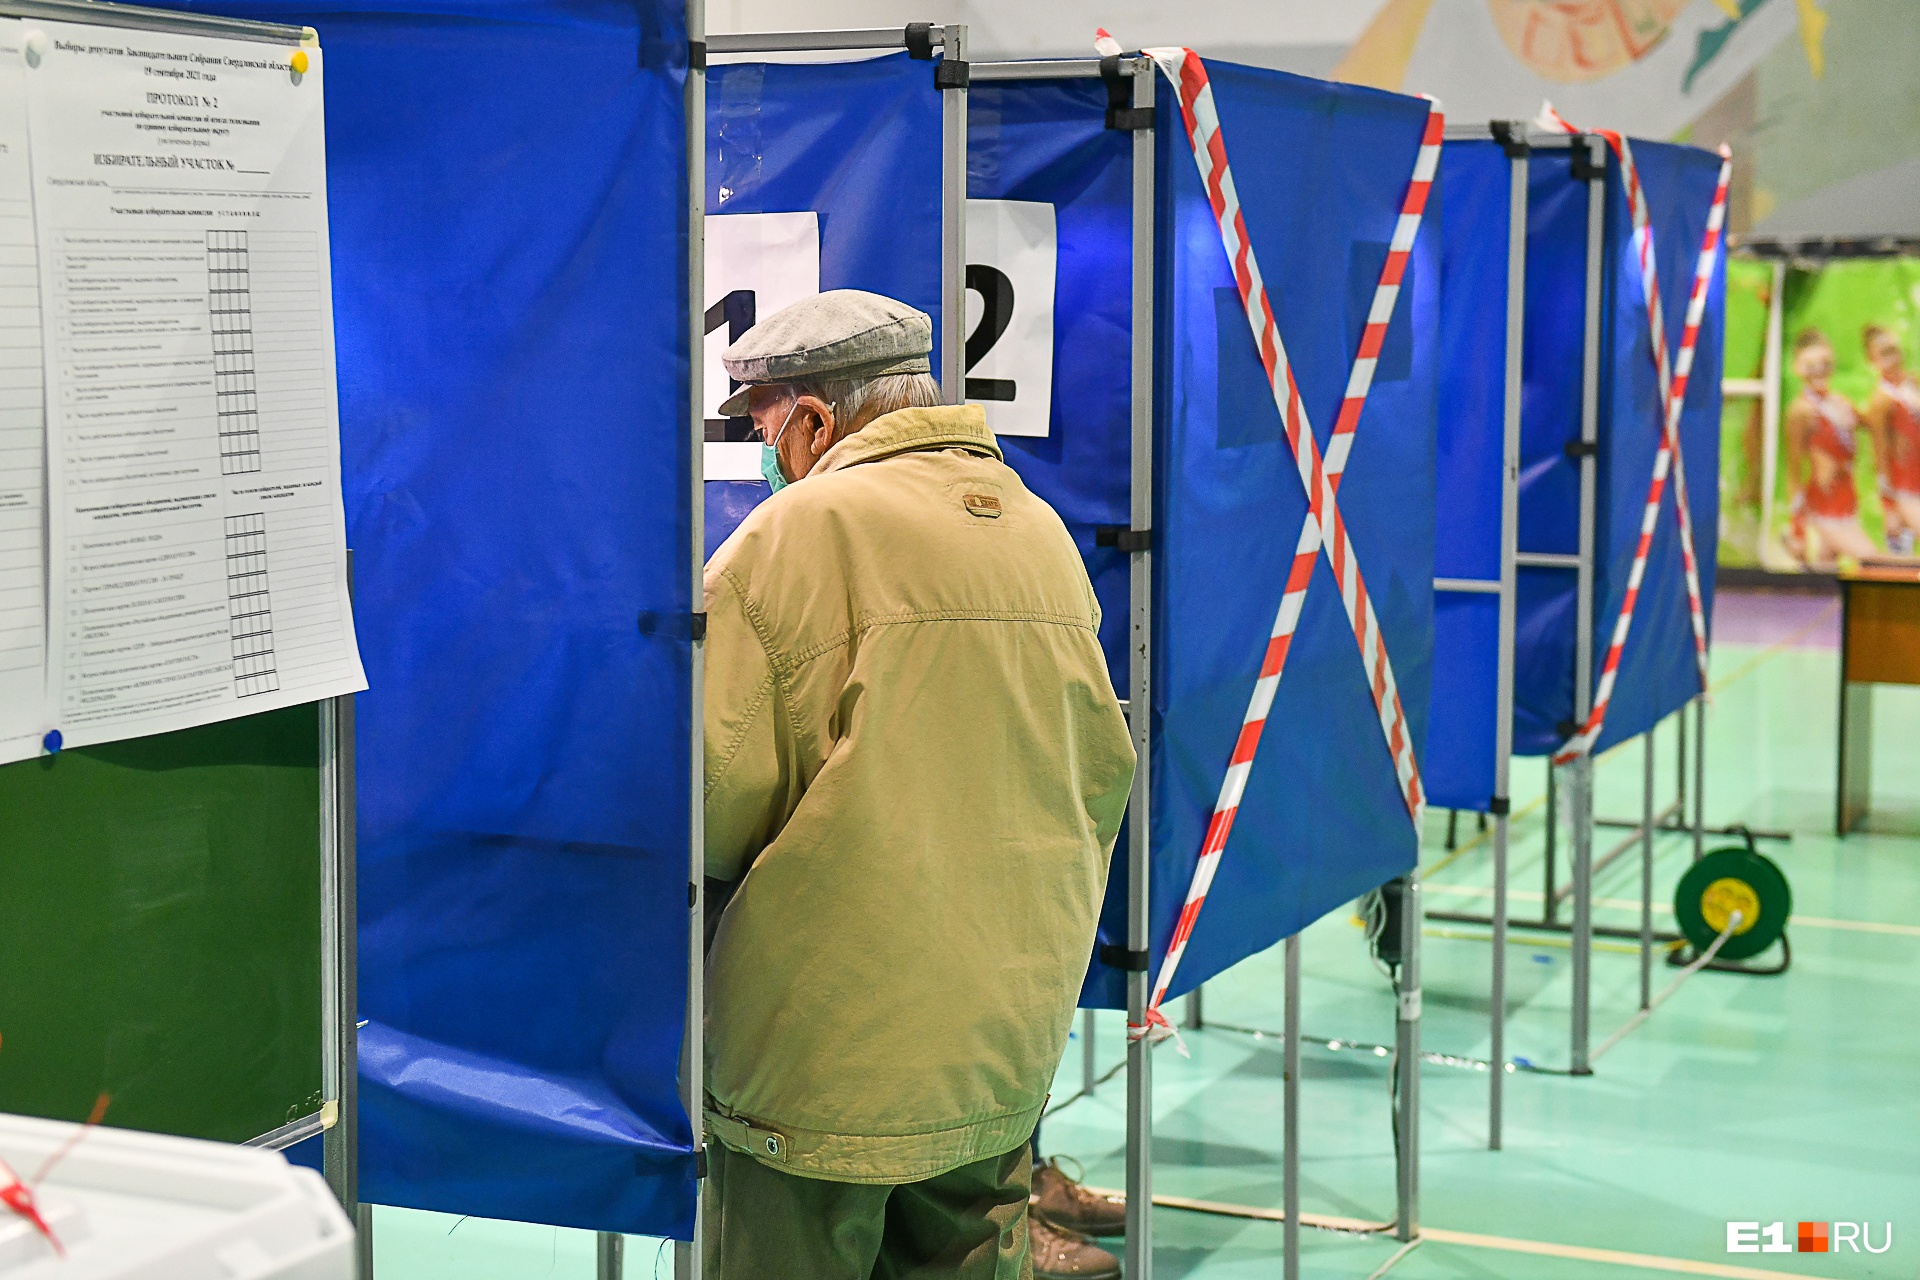 Уральским пенсионерам раздали карточки в «Пятерочку», которые обещали вручить на выборах